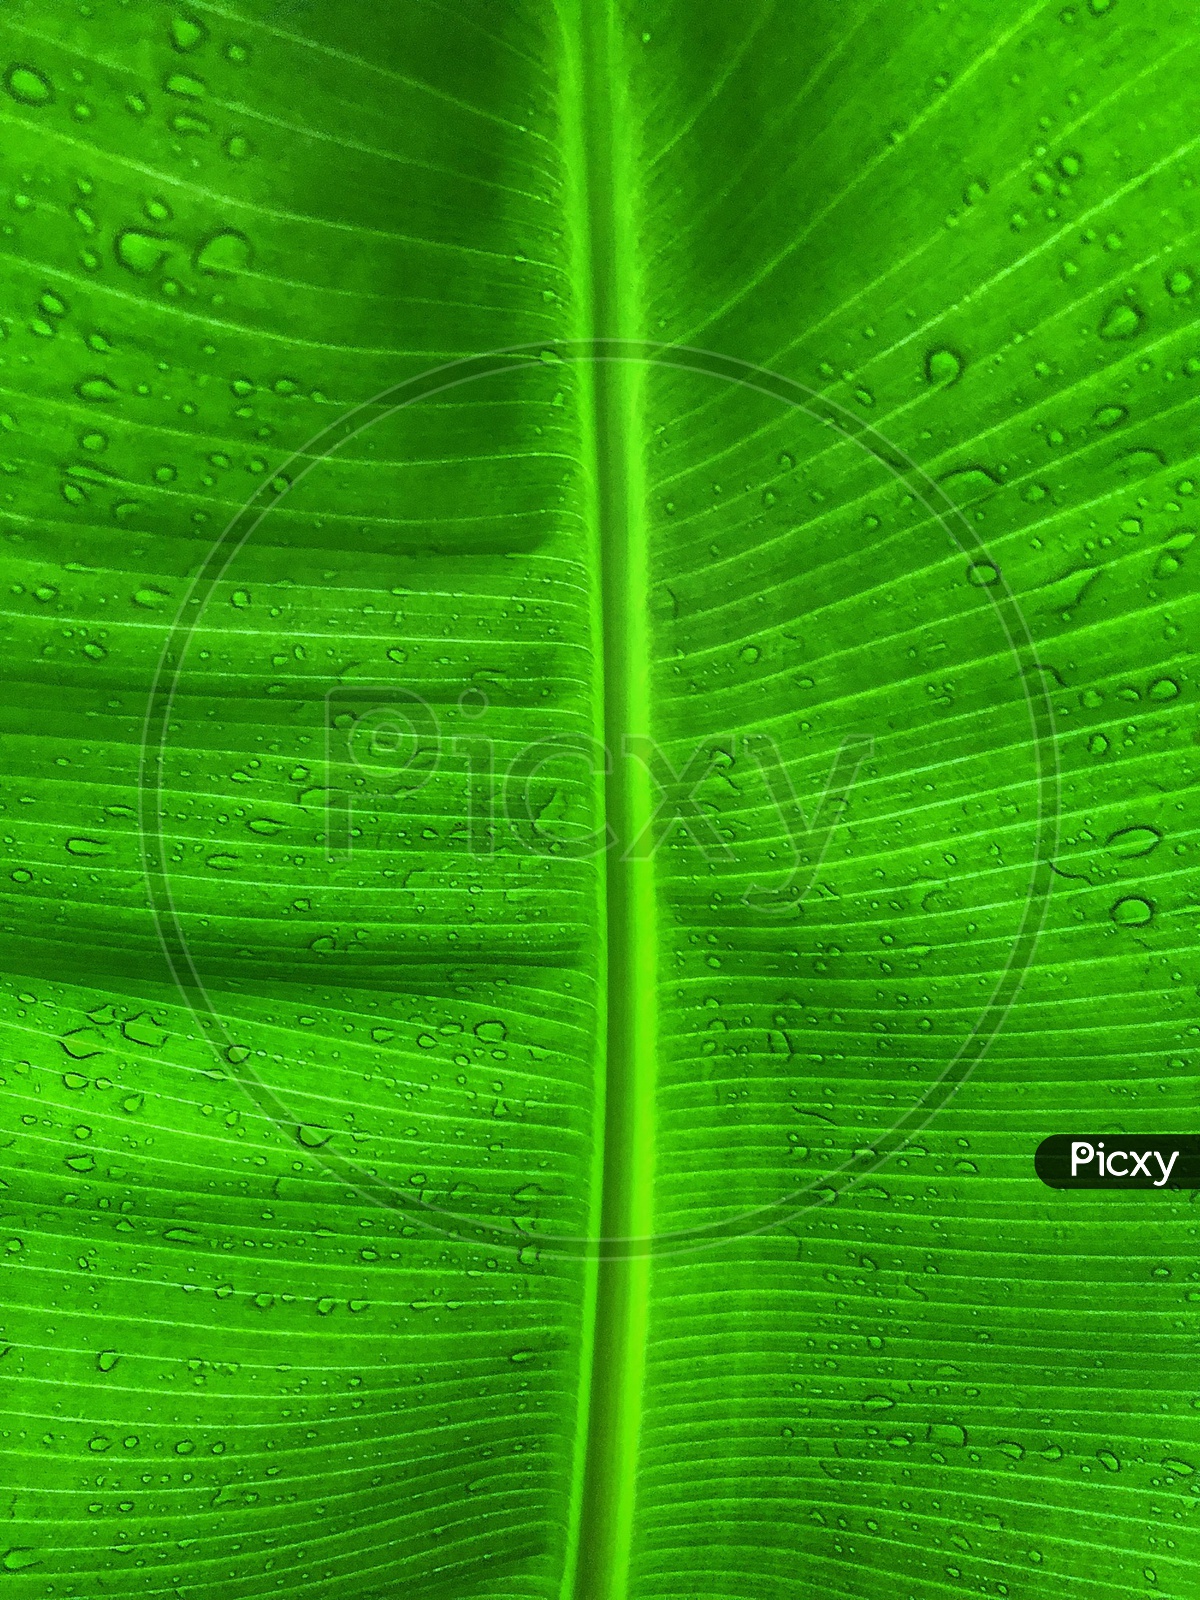 Design of a leaf